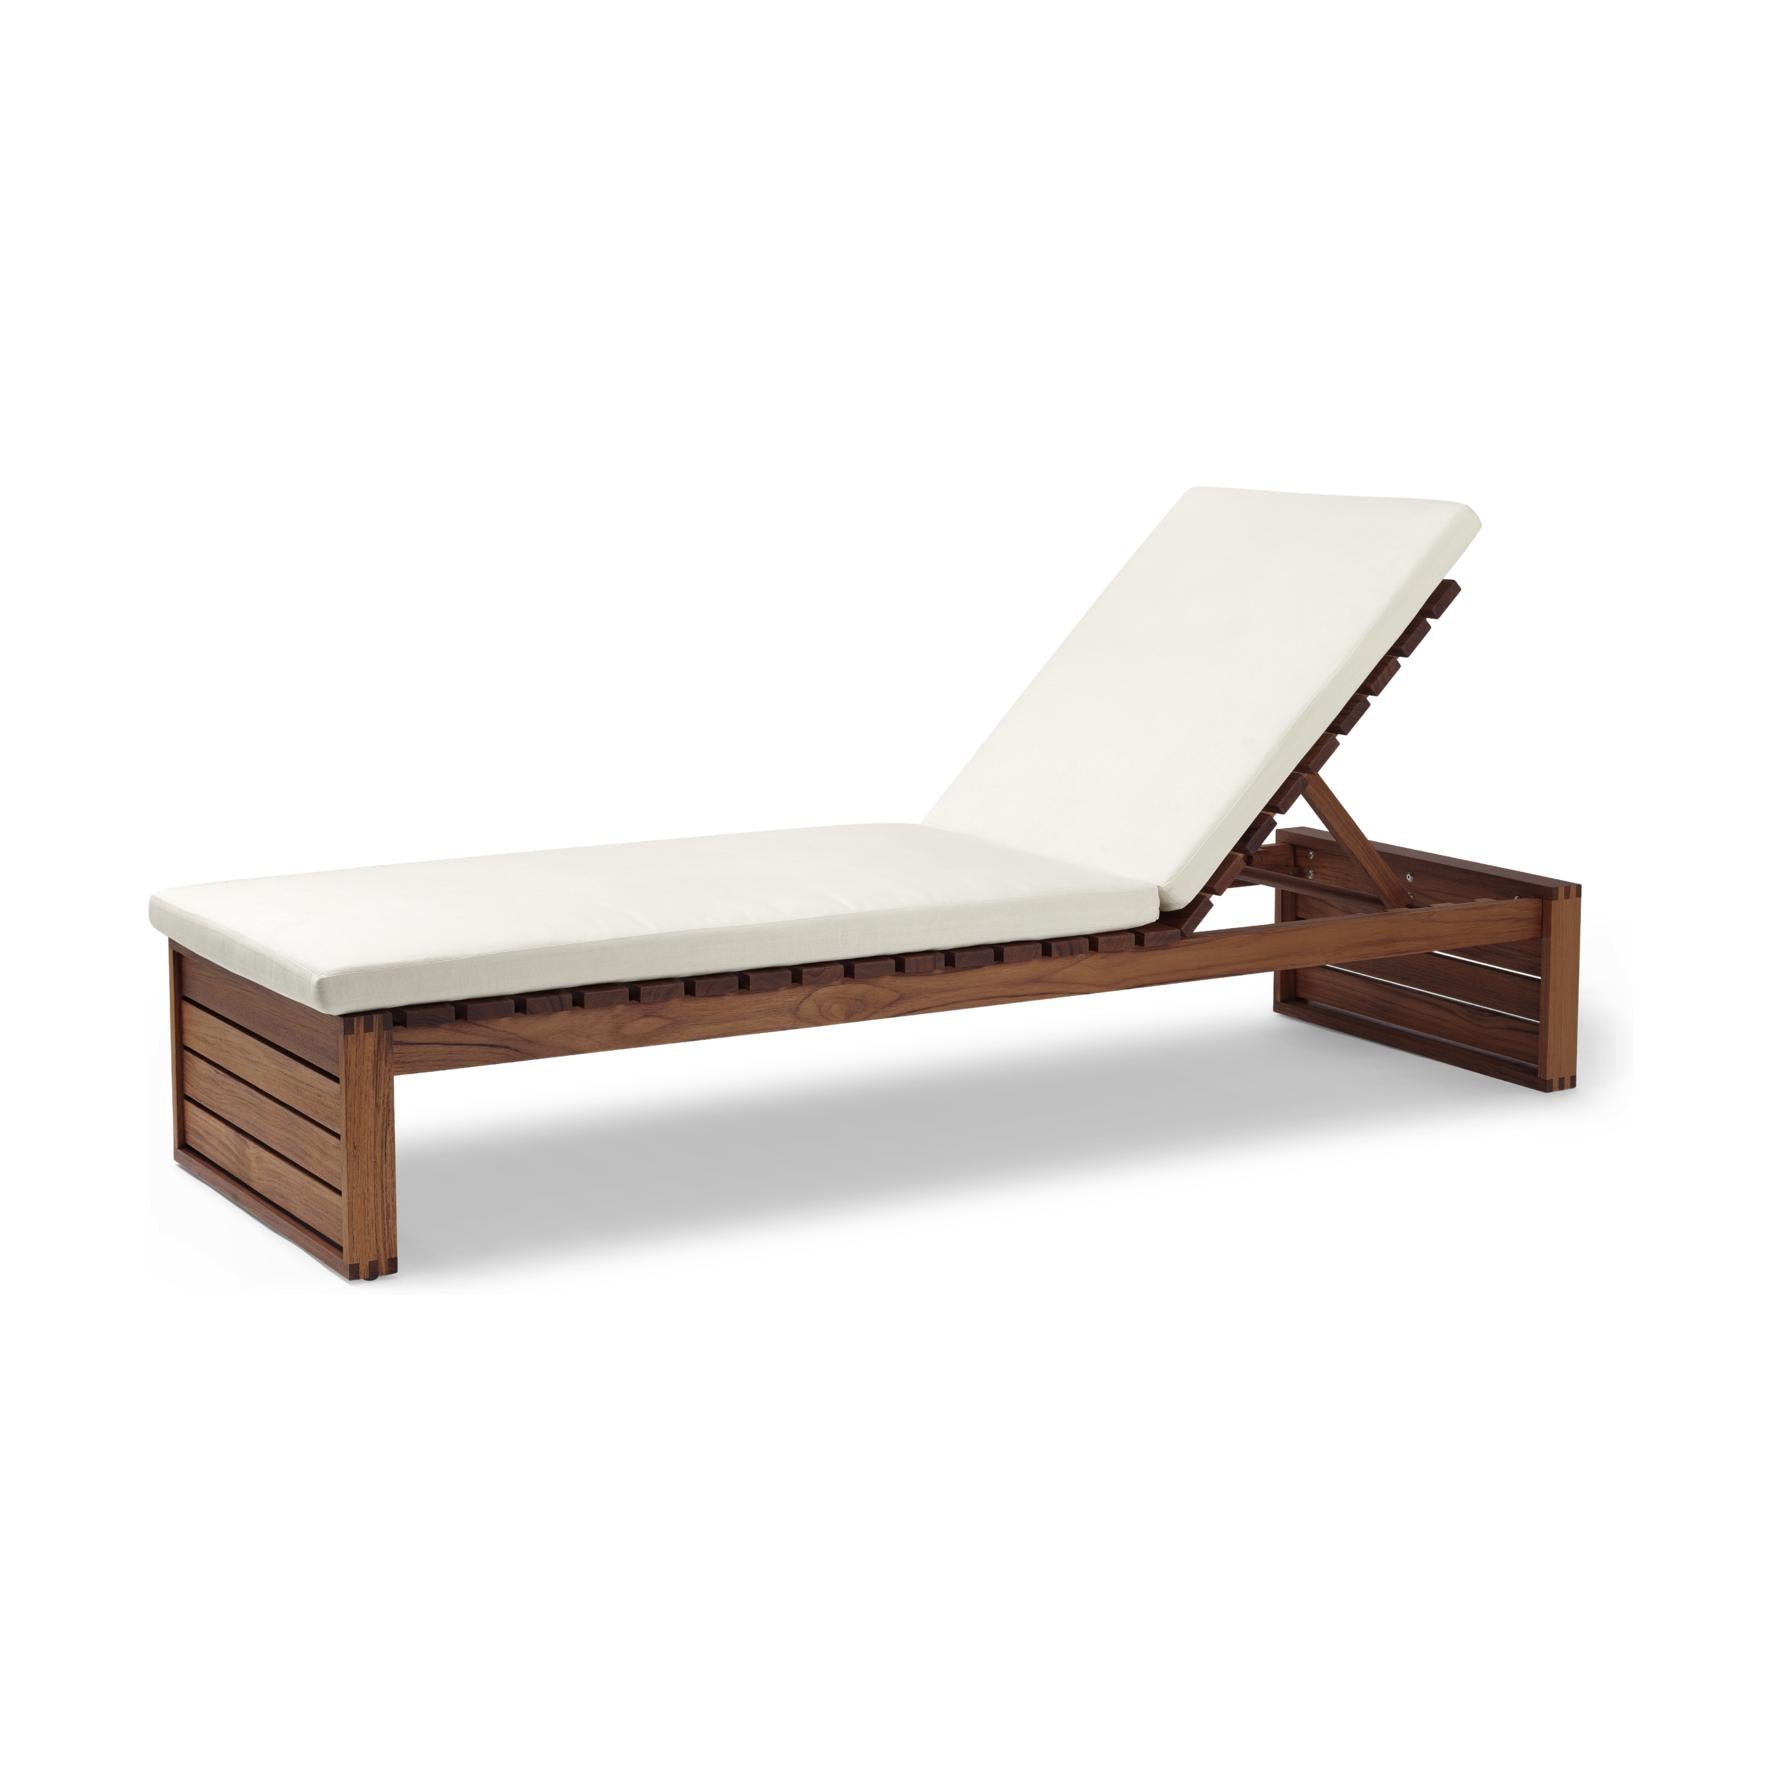 Carl Hansen Seat Cushion For Bk14 Sun Lounger